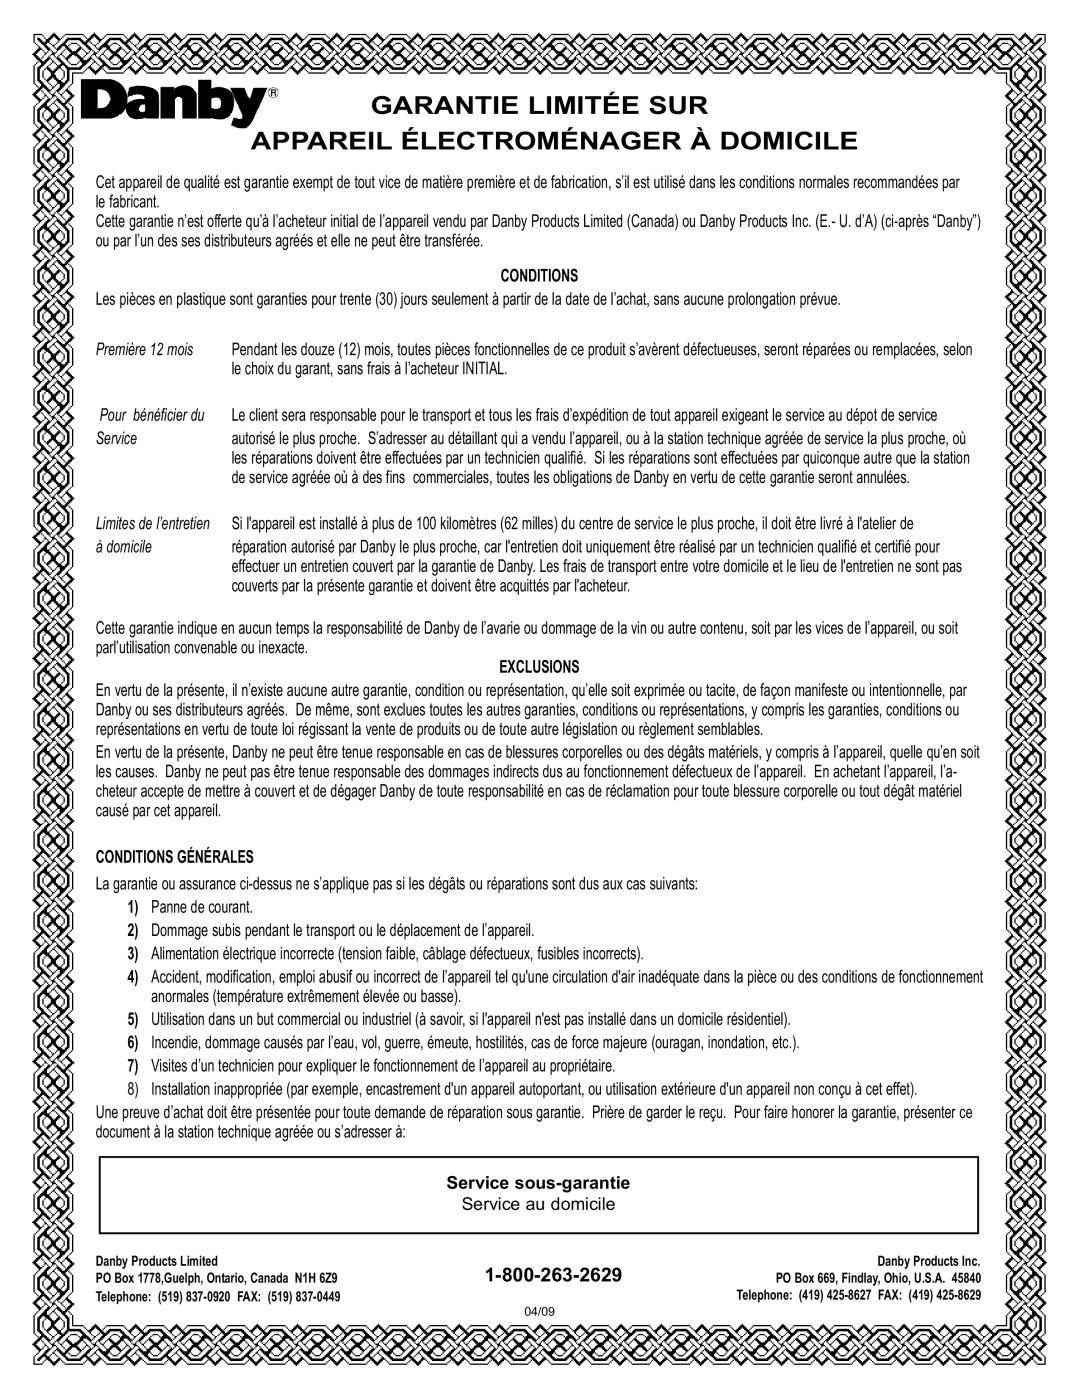 Danby DFF100A2WDB manual Première 12 mois, à domicile, Conditions Générales, Service sous-garantie, Exclusions 